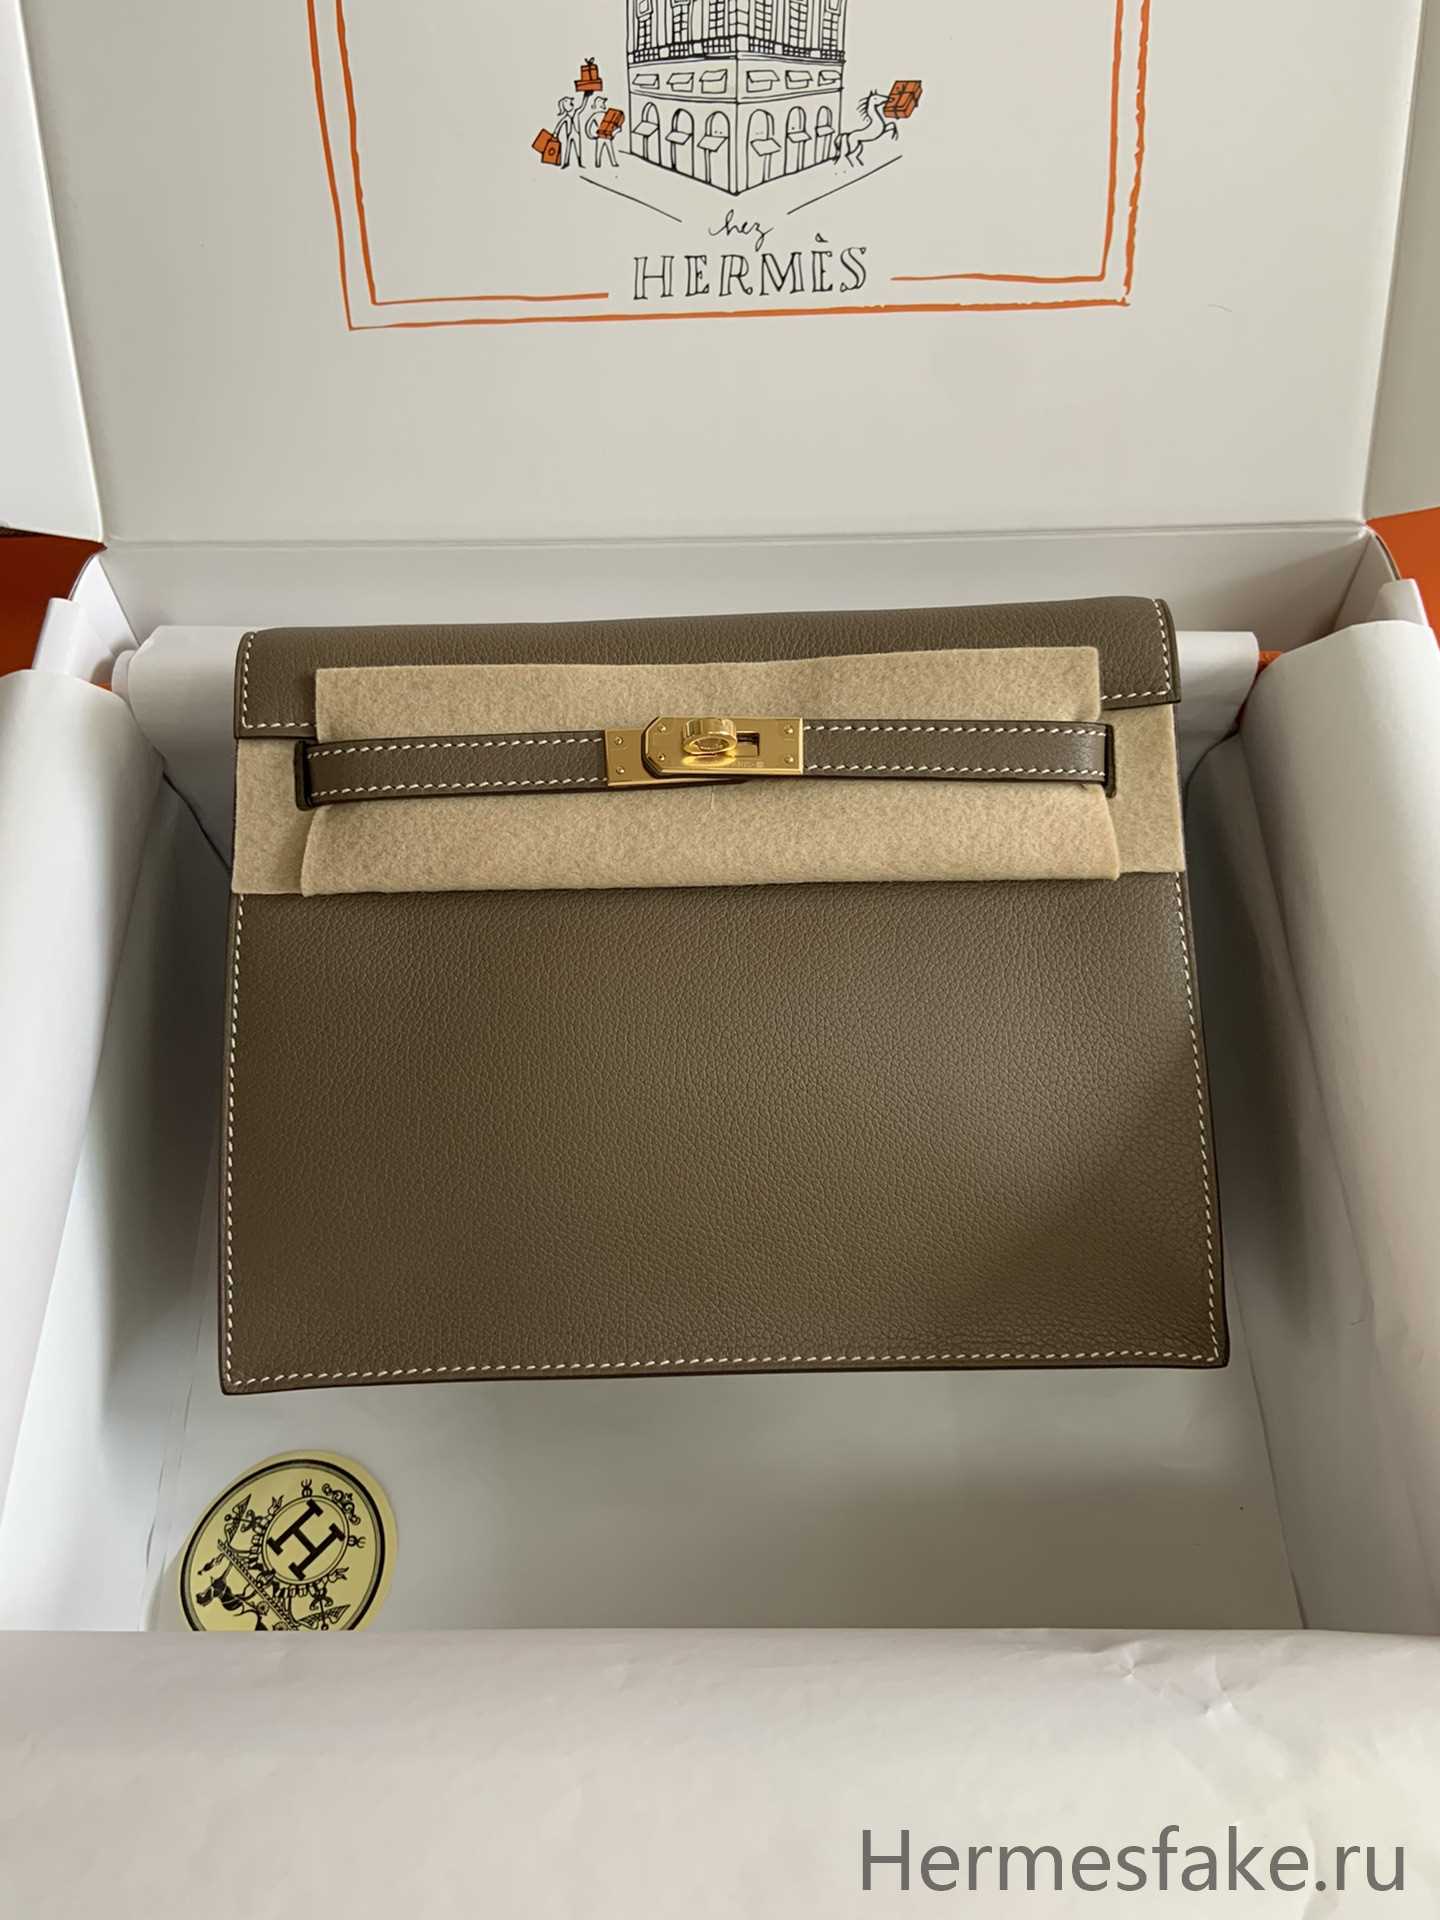 Hermes Kelly danse Bag – HBP036 - 1:1 replica bags designer